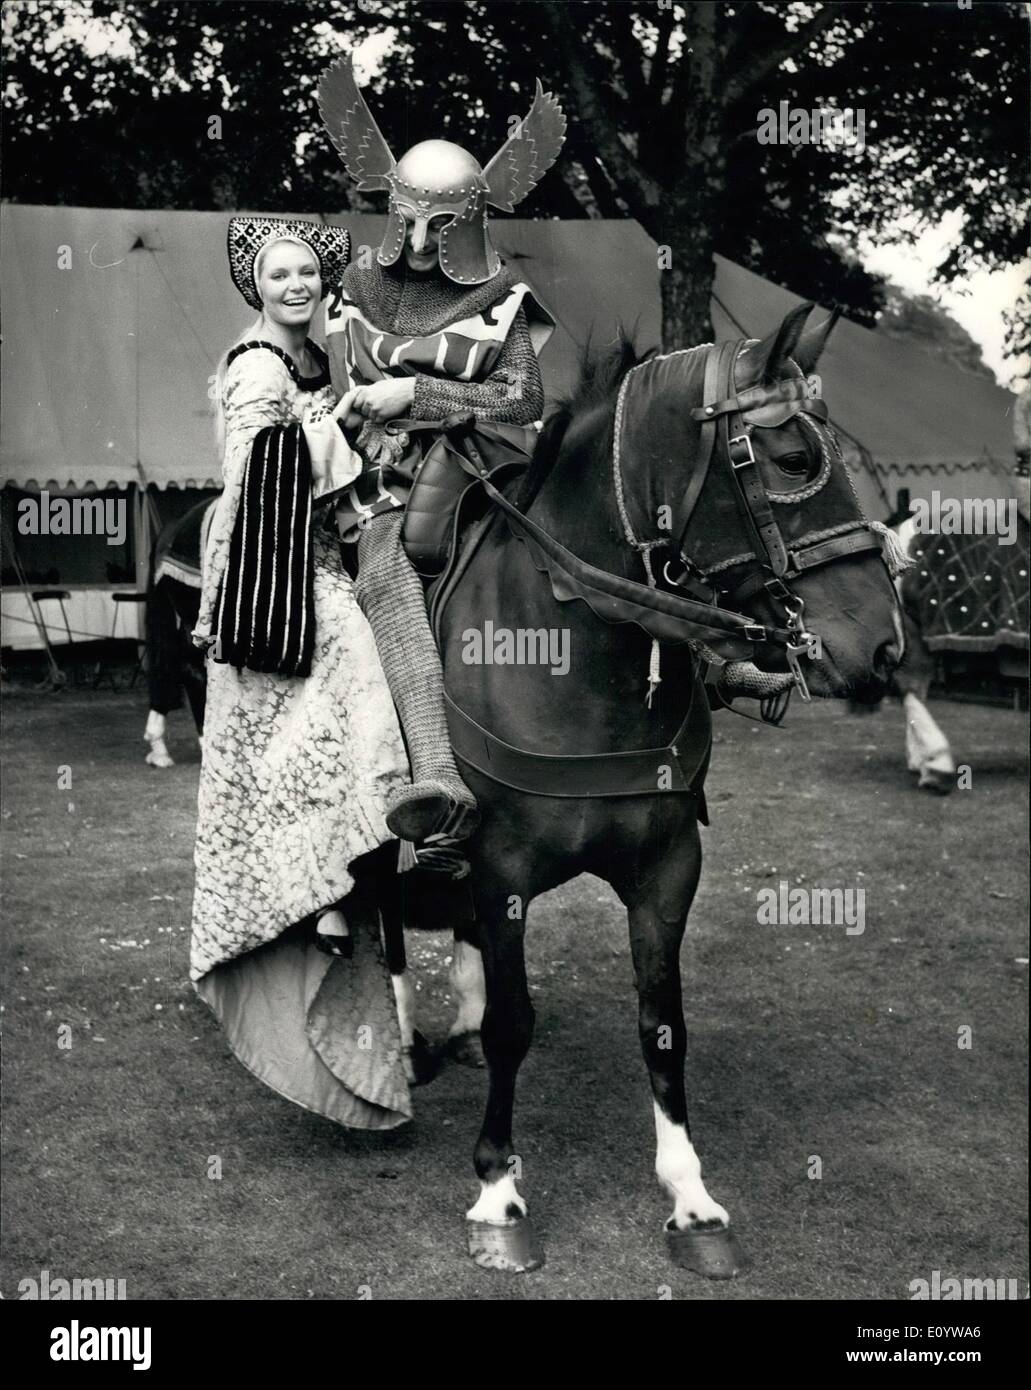 Lug. 07, 1971 - prove per il World Wildlife Decimo anniversario palla a Hurlingham: un completo Prove abito ha avuto luogo questo pomeriggio in preparazione per il World Wildlife decimo anniversario sfera che avrà luogo questa sera a Hurlingham. Il Duca di Edimburgo e il Principe Bernardo dei Paesi Bassi saranno ospiti d'onore a una serata medievale. Mostra fotografica di Eva Reuber Staier ''Miss Wildlife'', e l'ex 1969 Miss Mondo, è assistita su di un cavallo da Mark Chambalayne, che come Sir Mark prenderanno parte stasera''s palla. Foto Stock